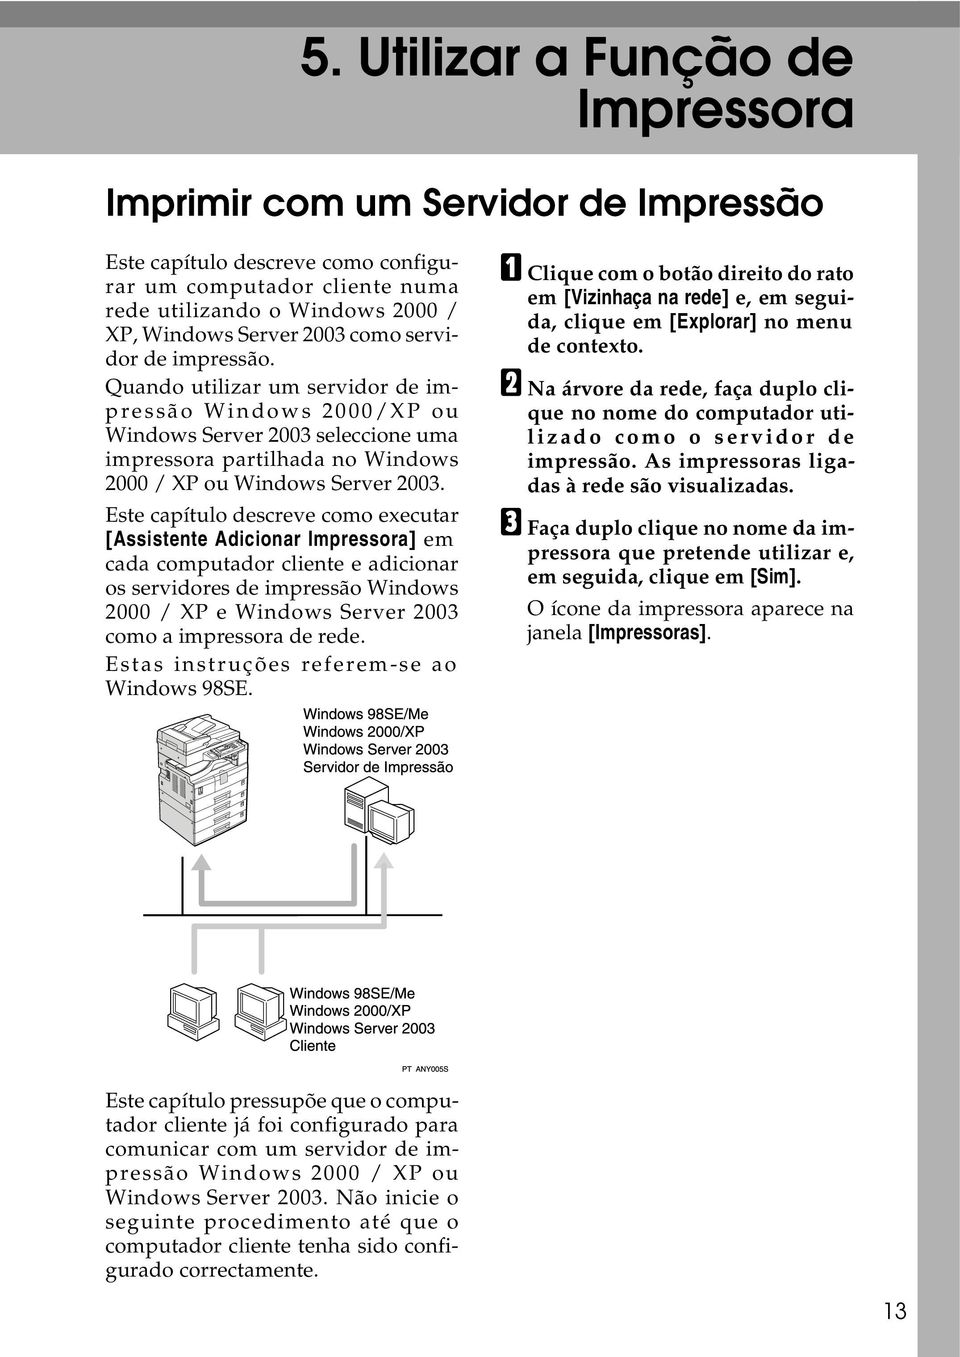 Este capítulo descreve como executar [Assistente Adicionar Impressora] em cada computador cliente e adicionar os servidores de impressão Windows 2000 / XP e Windows Server 2003 como a impressora de